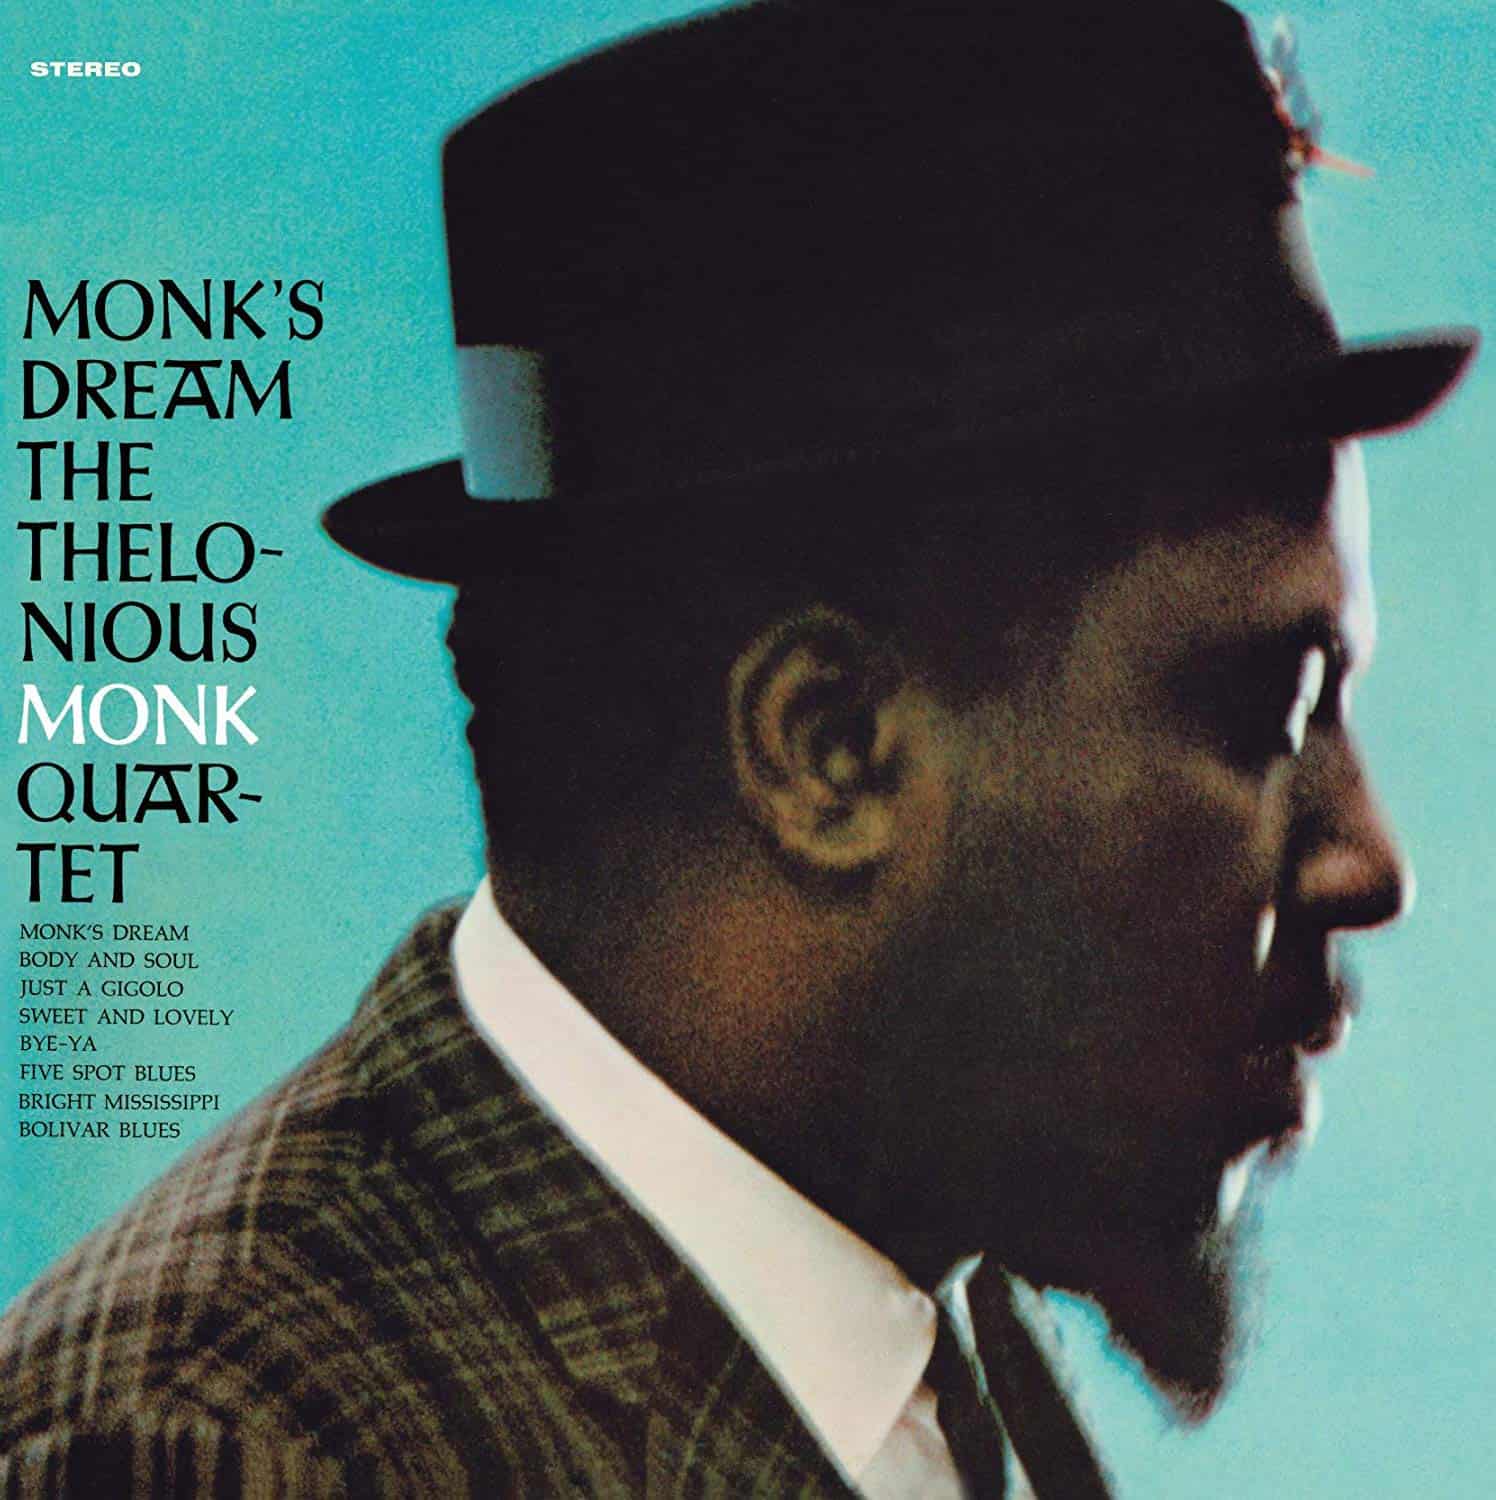 Thelonious-Monk-Trio-vinyl-LP-record-album-front